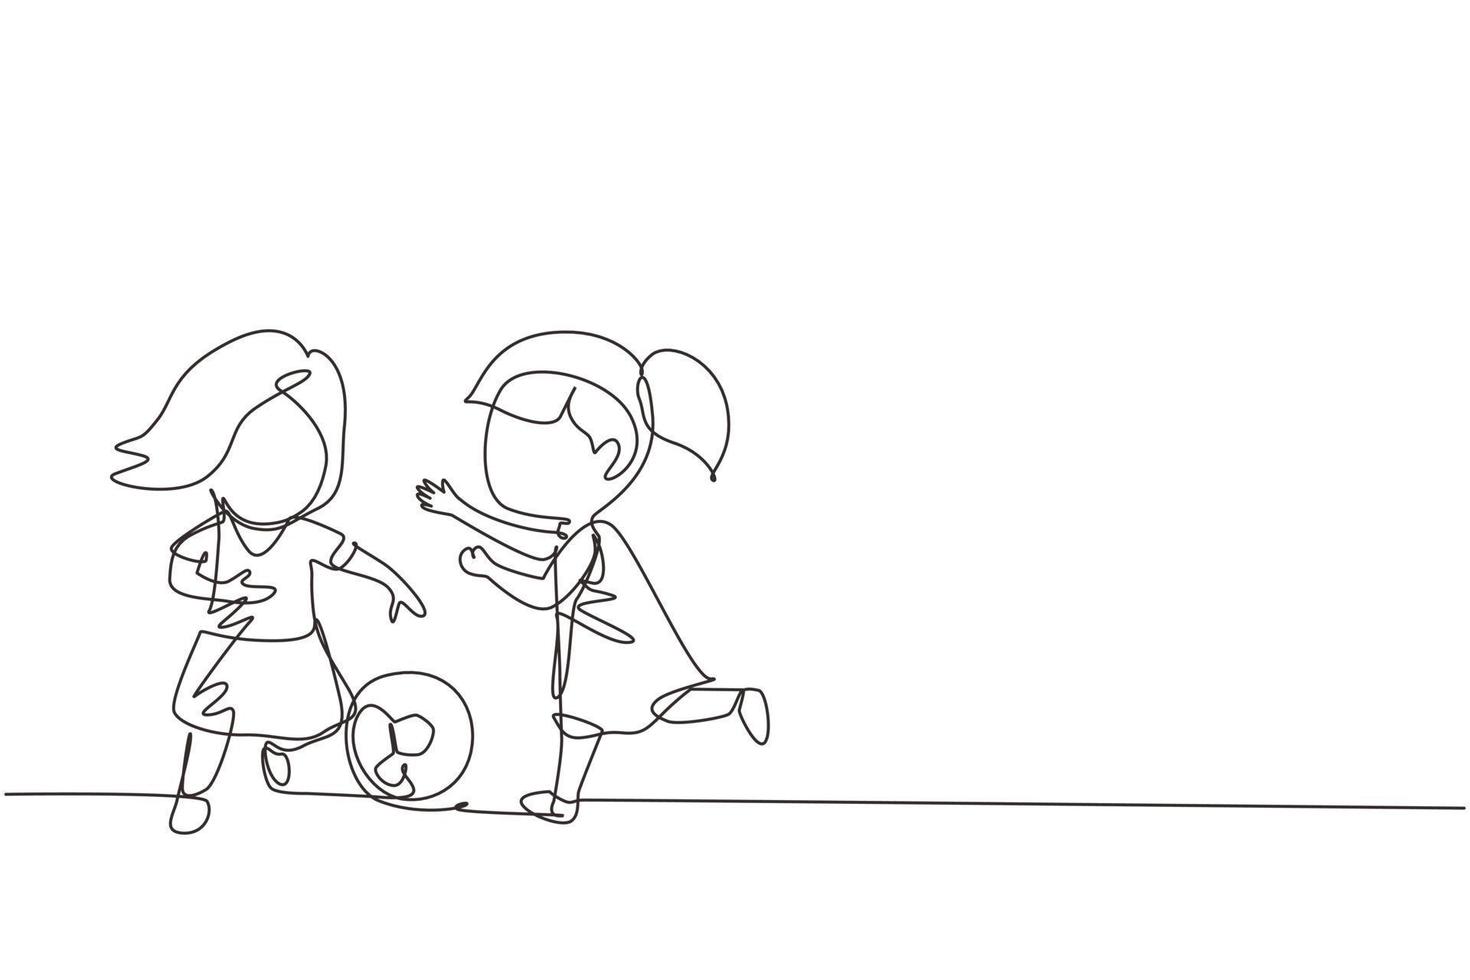 ragazze che disegnano una linea continua che giocano a calcio insieme. due bambini felici che giocano a sport al parco giochi. bambini sorridenti che calciano la palla a piedi tra di loro. grafica vettoriale a linea singola